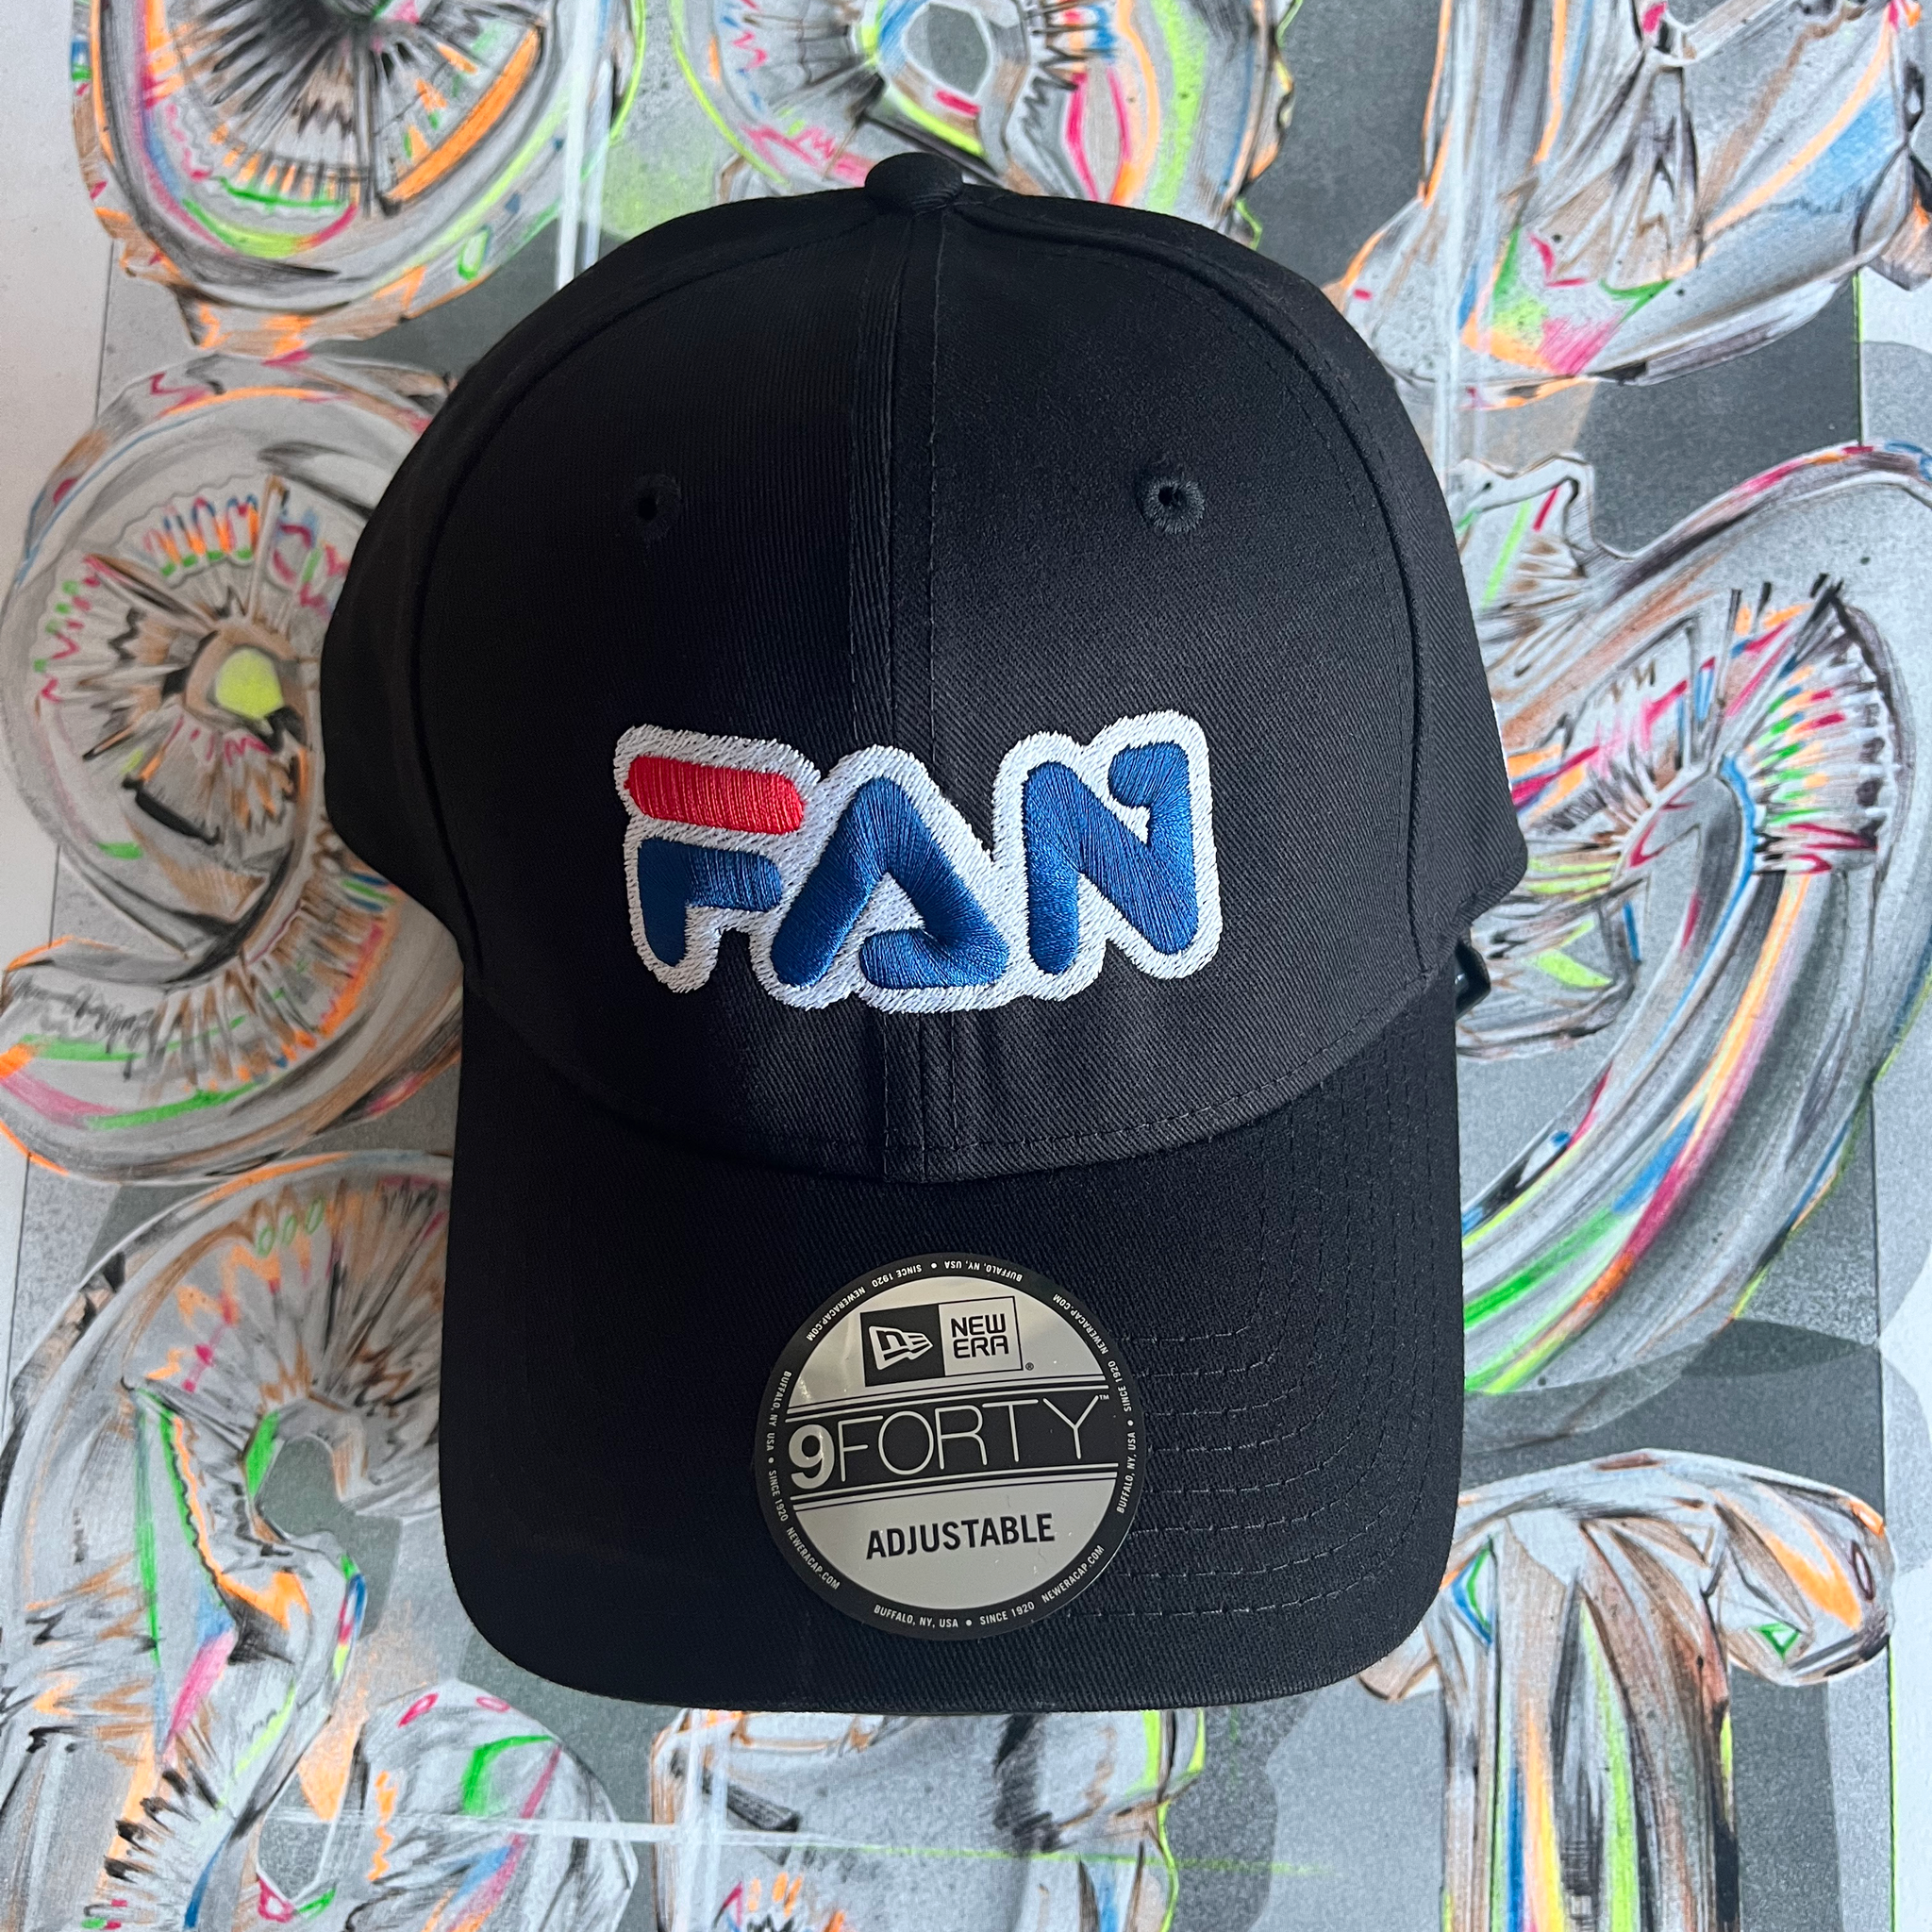 'FAN' Caps